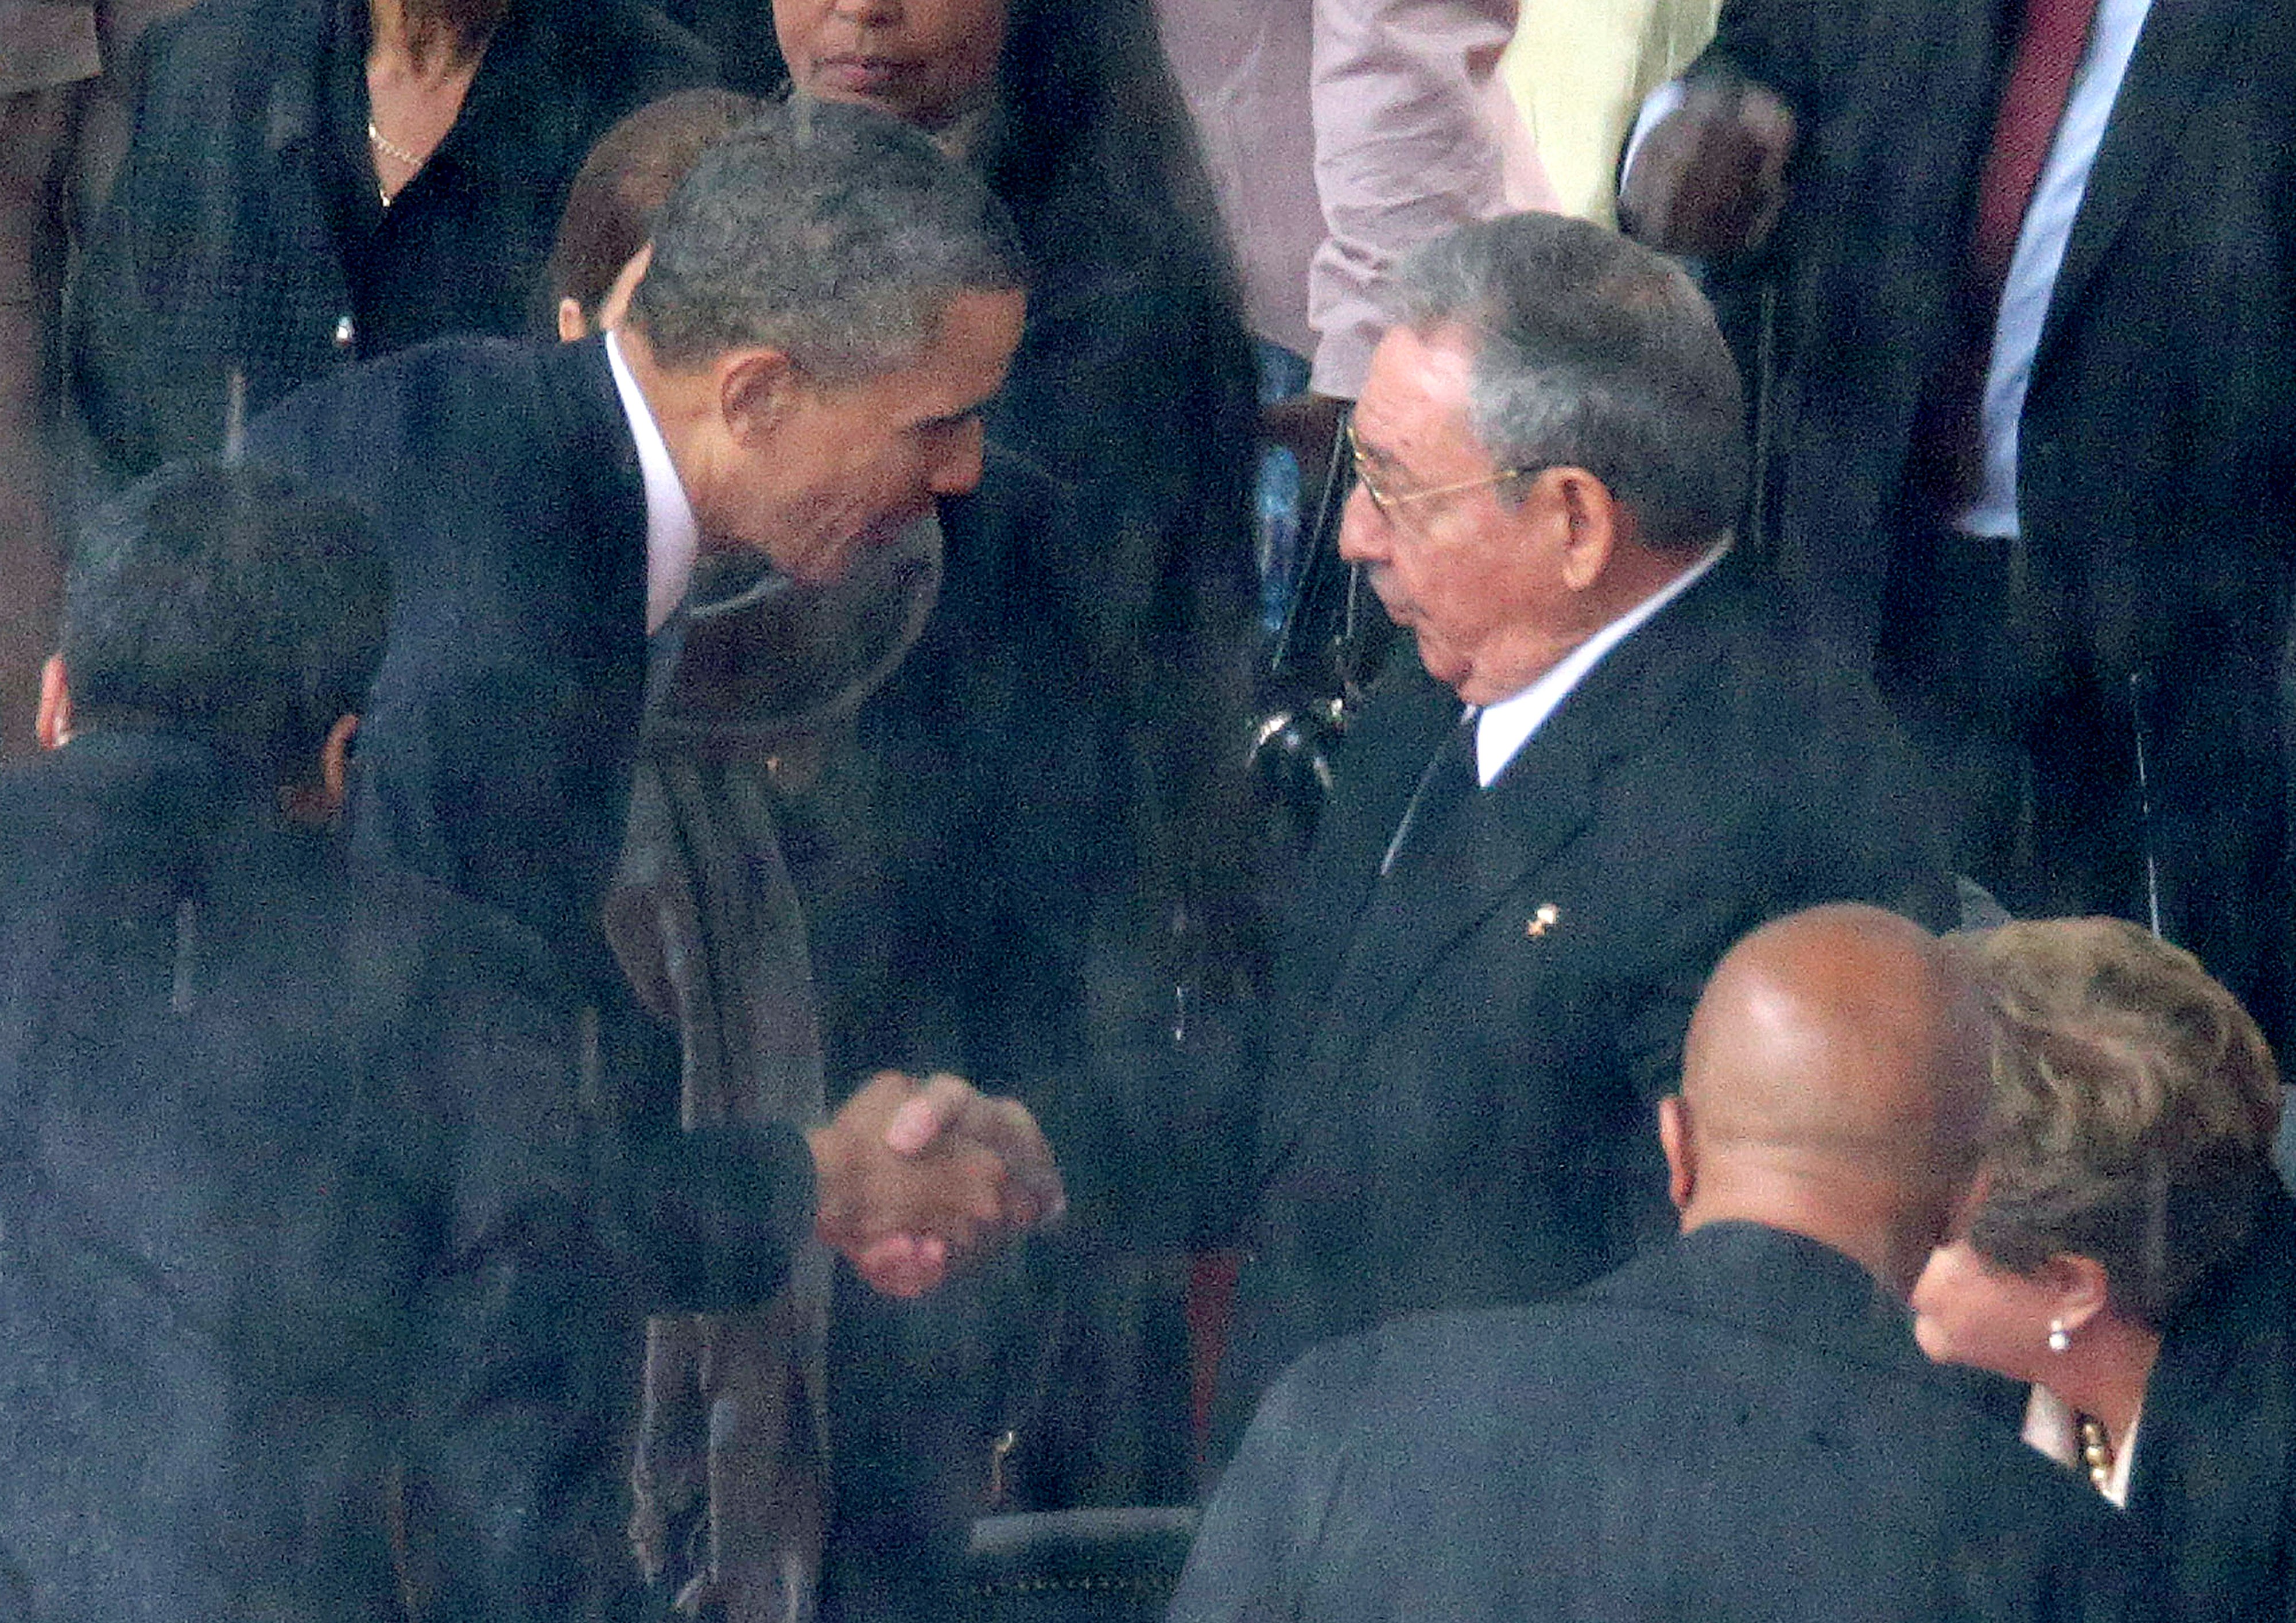 Obama aperta simbolicamente a mão de Raúl Castro no funeral de Nelson Mandela (Foto: Getty Images)